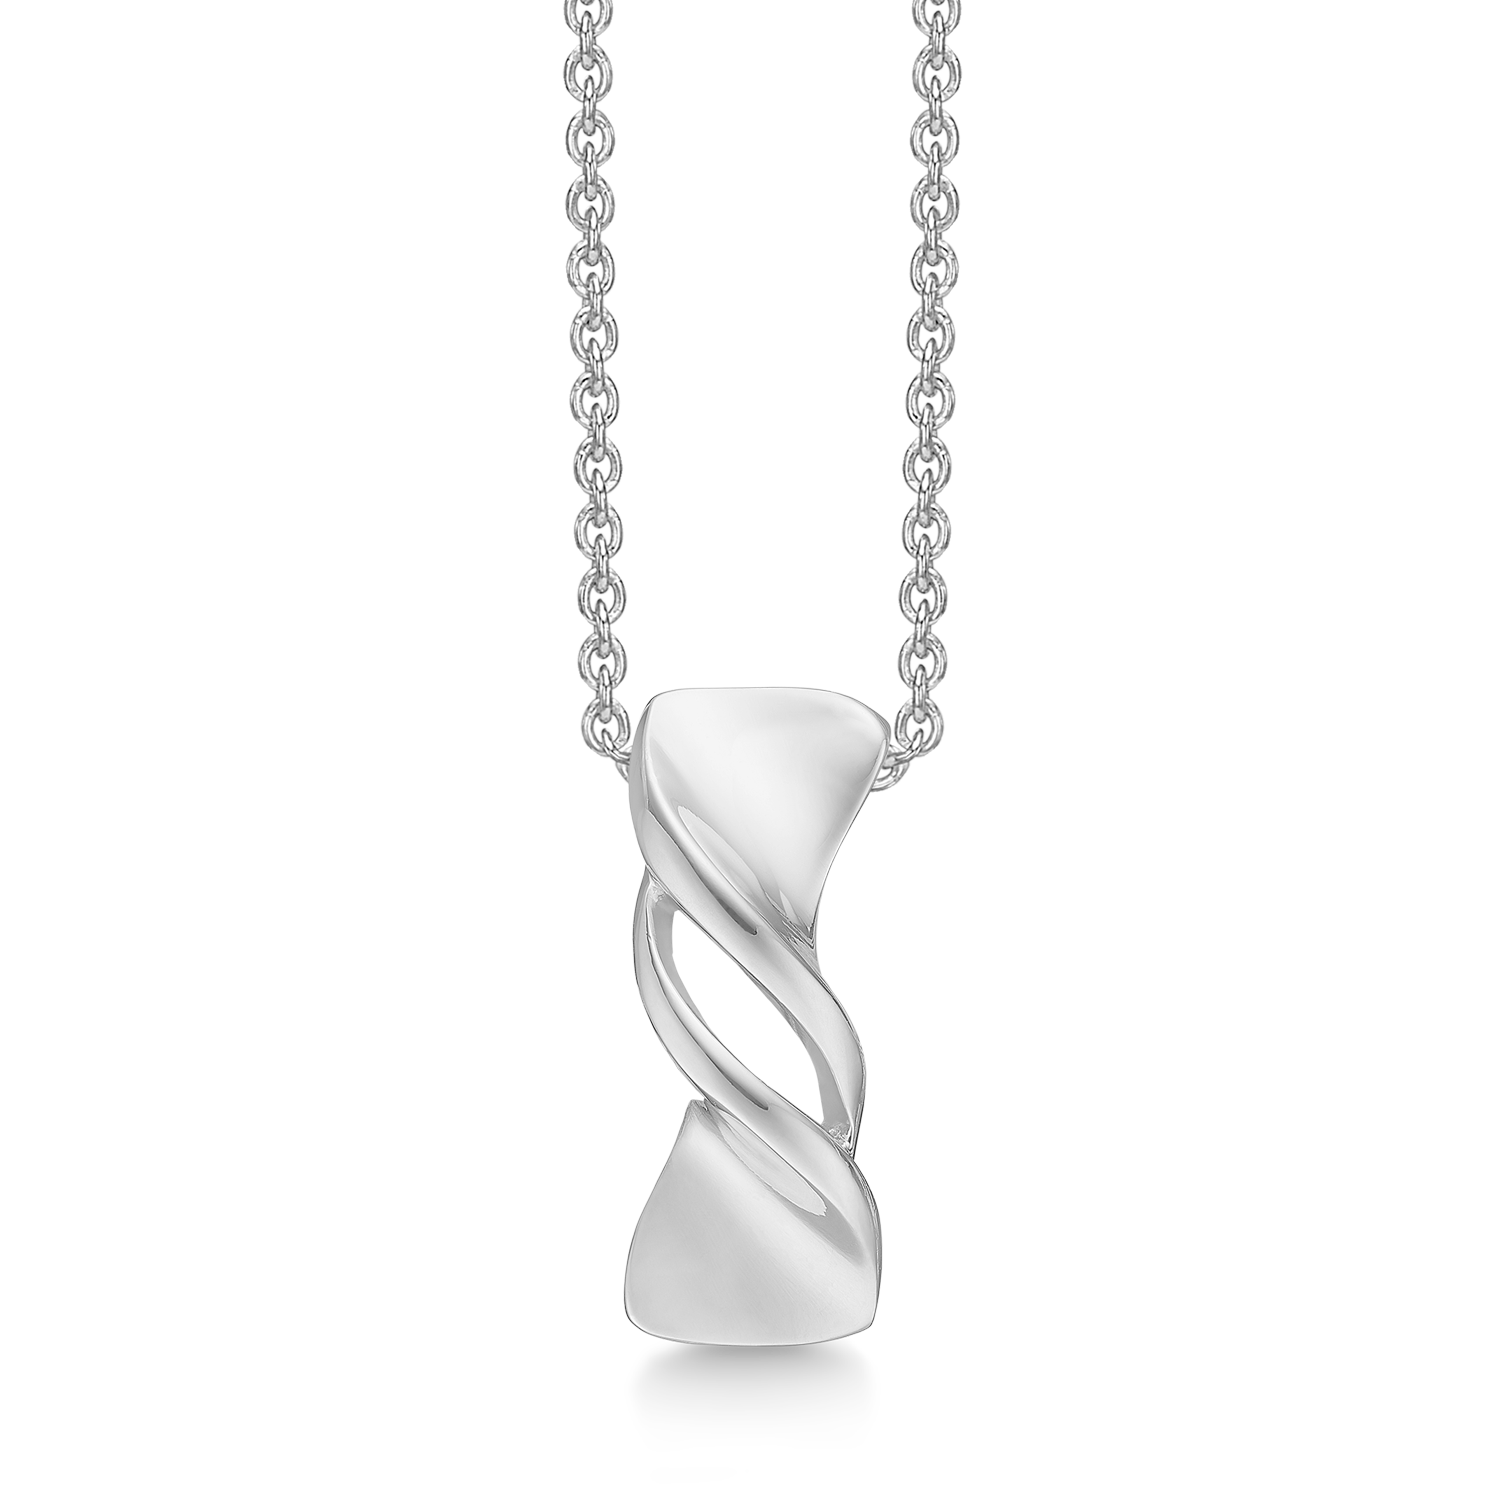 overskud konstruktion horisont Sølv halskæde rhodineret bred pind. Kæden er rhodineret sølv i længde 42-45  cm. - Copenhagen smykker